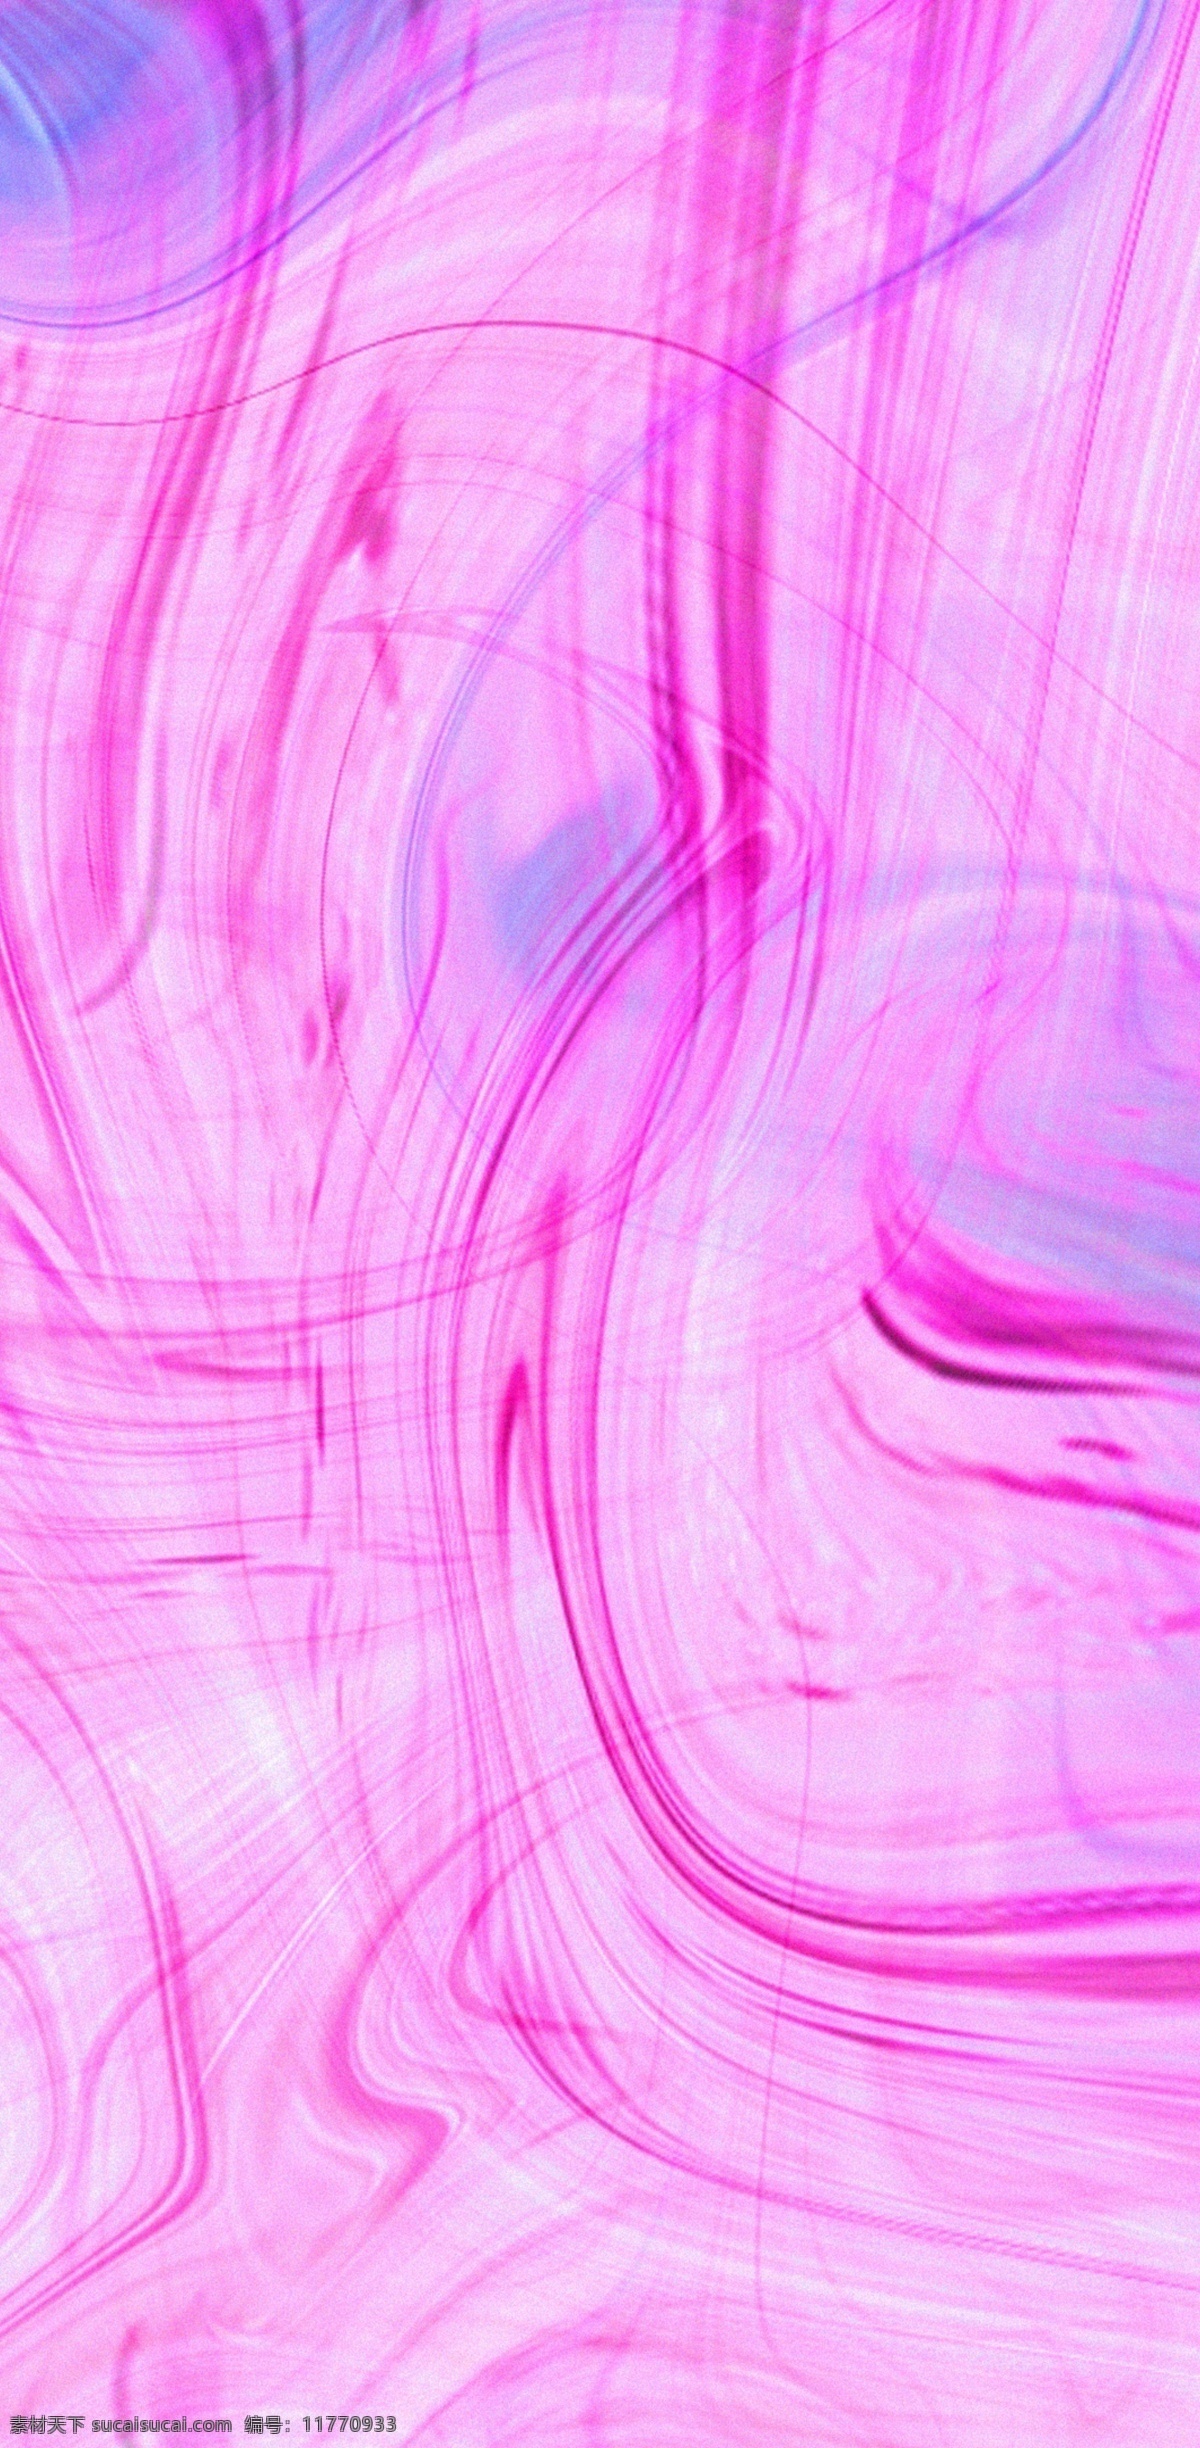 原创 手绘 紫色 水彩 波纹 文艺 范 手机壳 清盘 艺术 曲线 波浪 炫酷 唯美 不模糊 电子机械包装